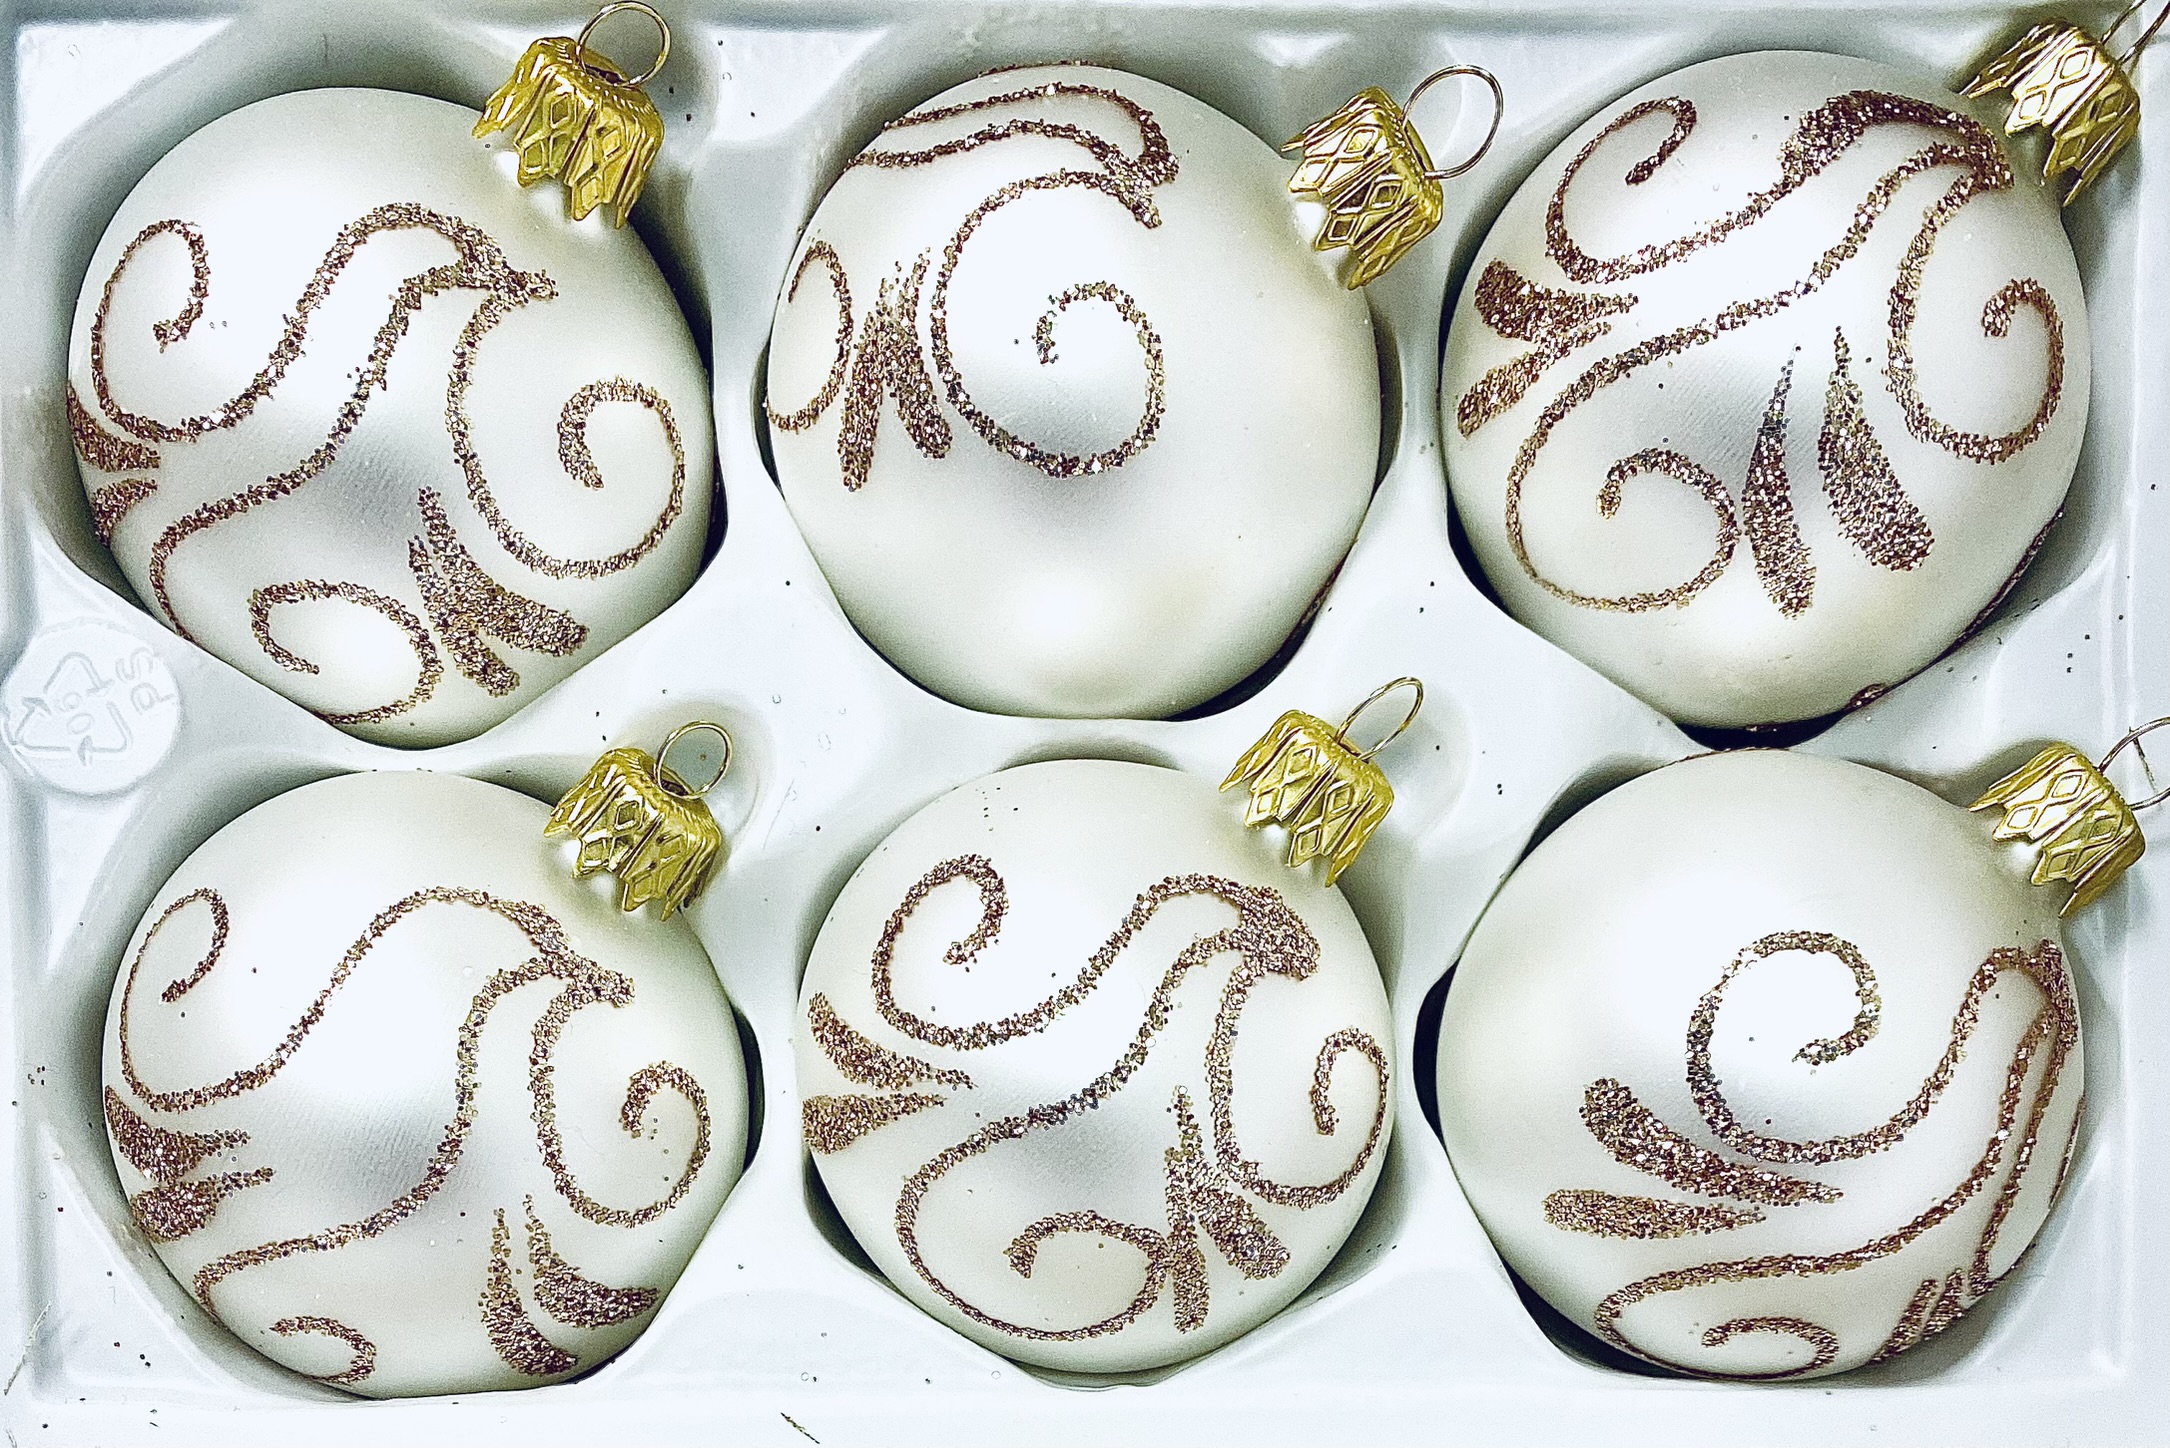 Irisa Vánoční skleněné ozdoby - Ella winter ornament collection (Sada 6 ks, Velikost 6 cm) Balení: 6 ks, Barva: bílá, Velikost: 6 cm